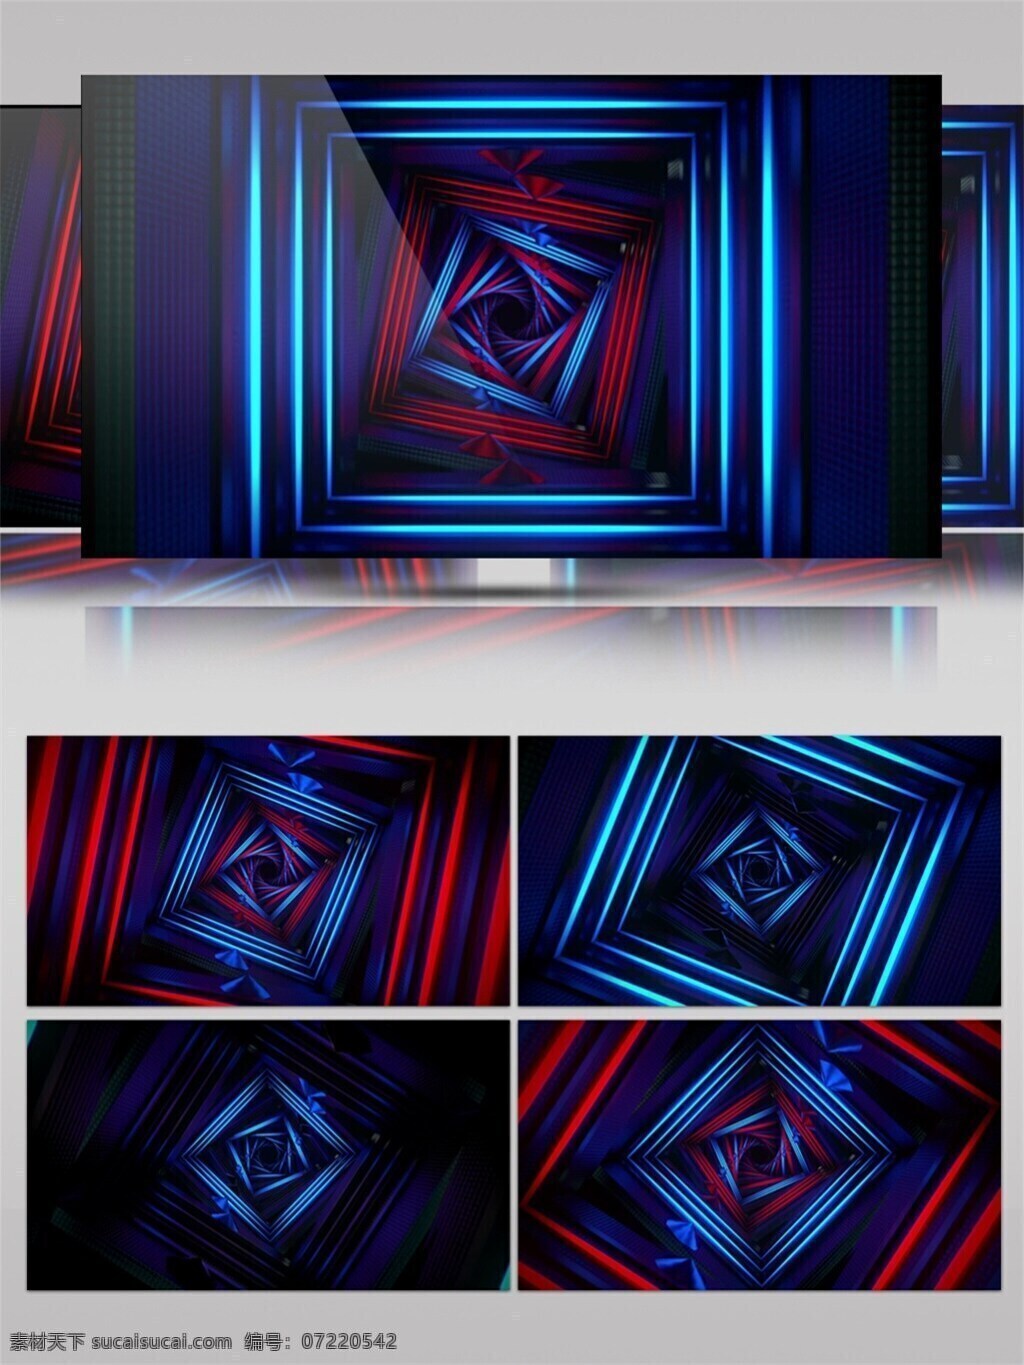 青光 正方形 动态 视频 方正 高清 背景 蓝色光格 立体几何 装饰风格